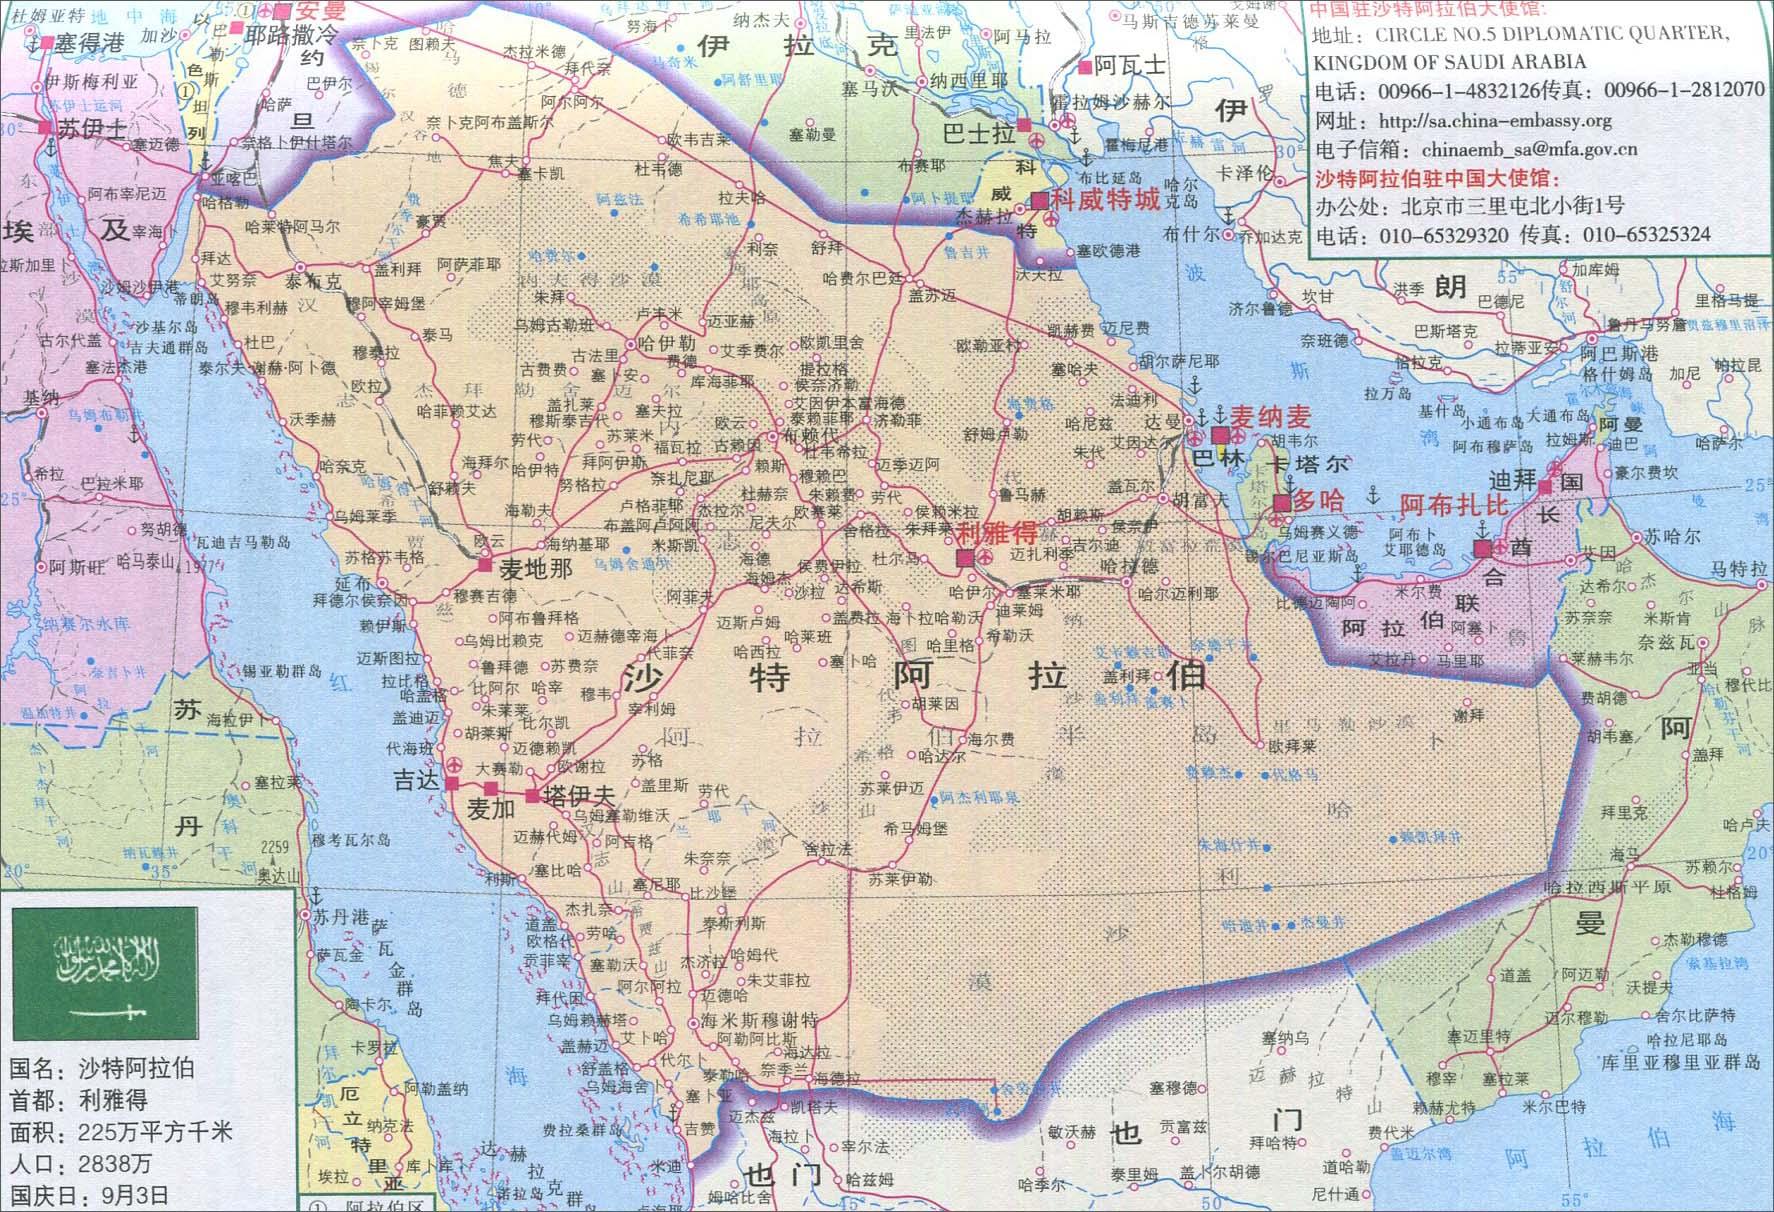 沙特阿拉伯的麦加地区：历史、文化以及更多 - Visit Saudi官方网站